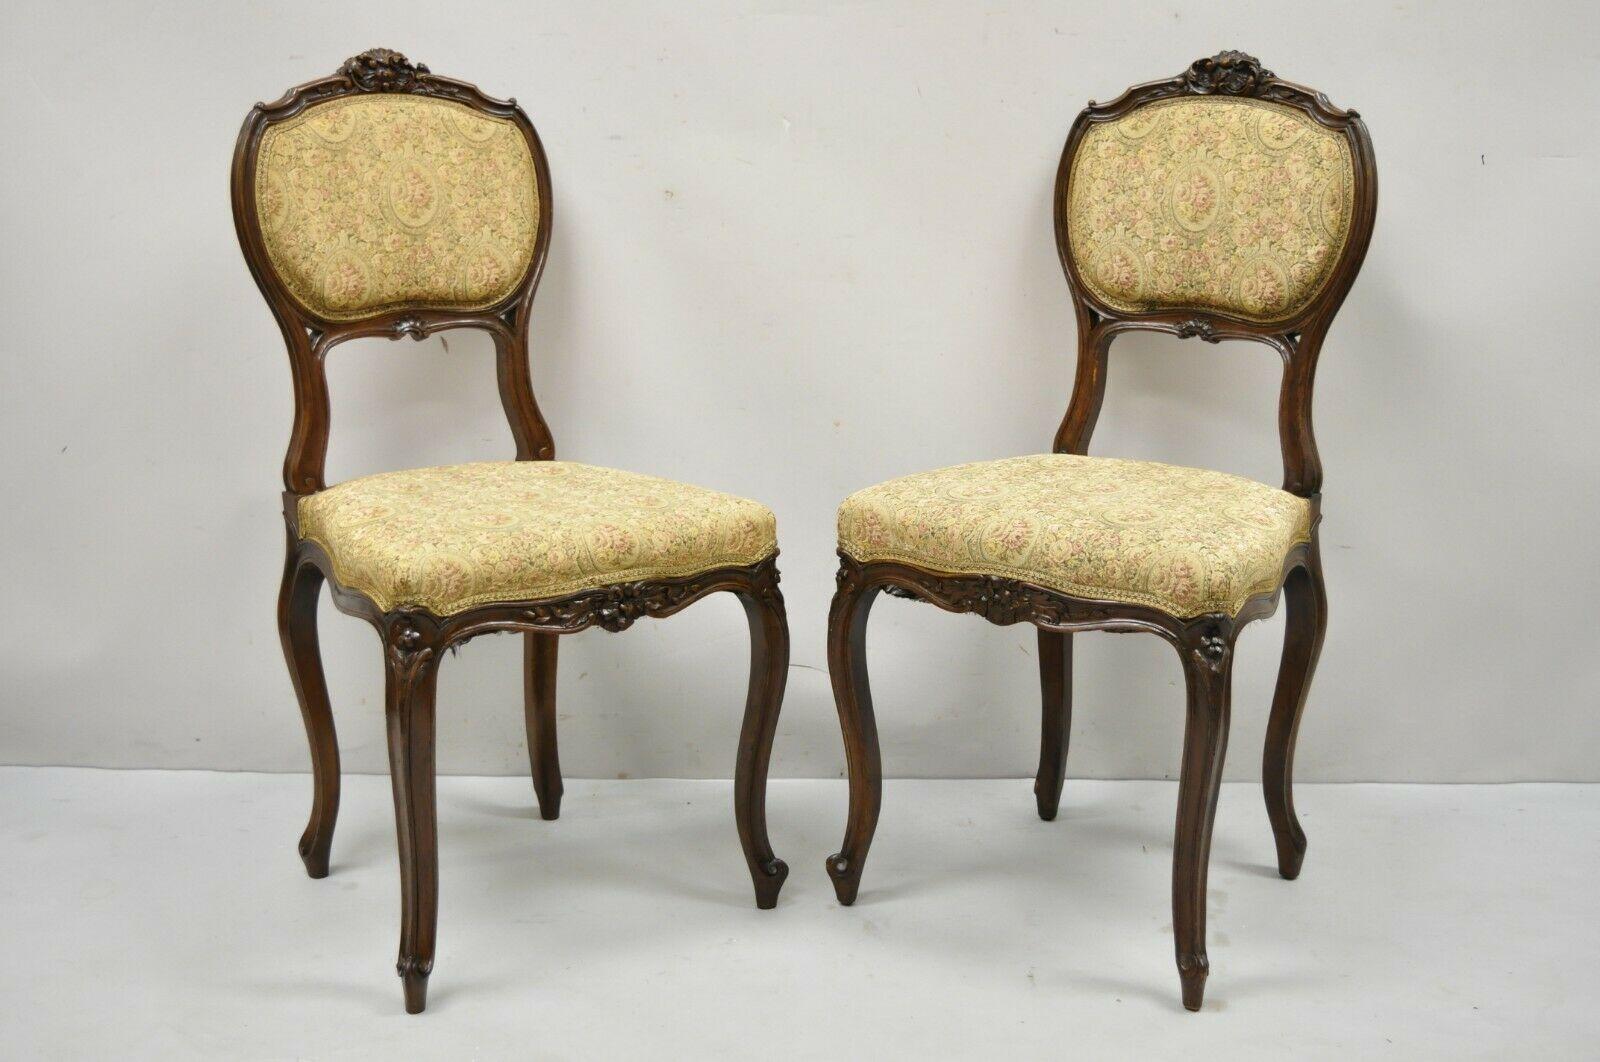 Antike französisch-viktorianische Stühle aus Mahagoni, gepolstert, von J.B. Van Sciver - 4er Set. Set beinhaltet (4) Beistellstühle, Massivholzrahmen, schöne Holzmaserung, schön geschnitzte Details, Originaletikett, sehr schönes antikes Set, toller